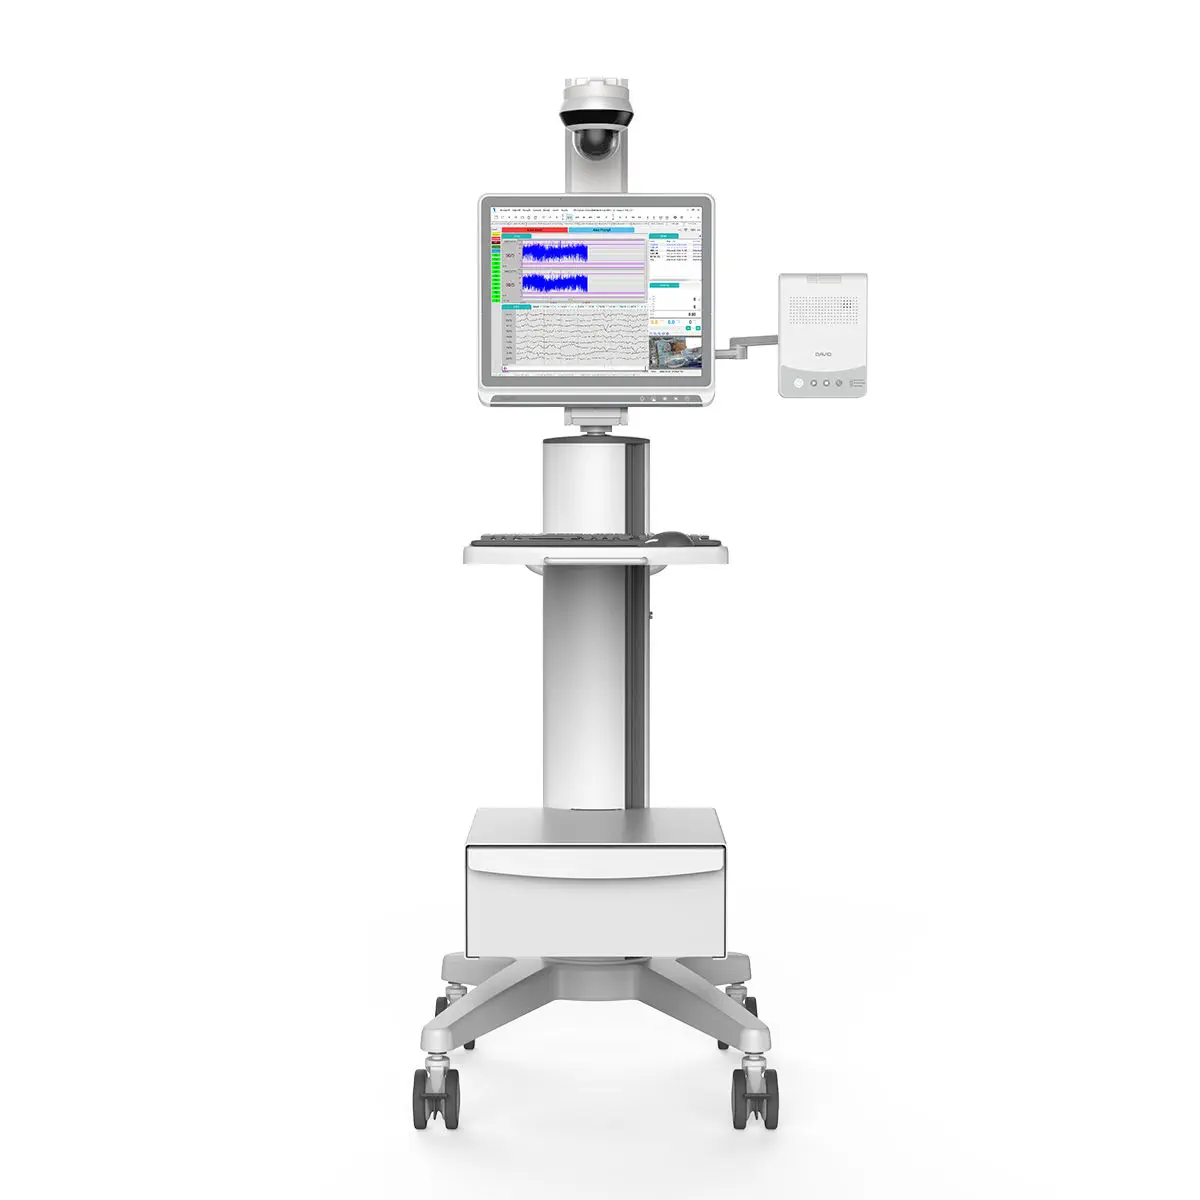 เครื่องติดตามการทำงานของหัวใจและสัญญาณชีพอัตโนมัติ  Trolley-mounted patient monitor ND-8S  David